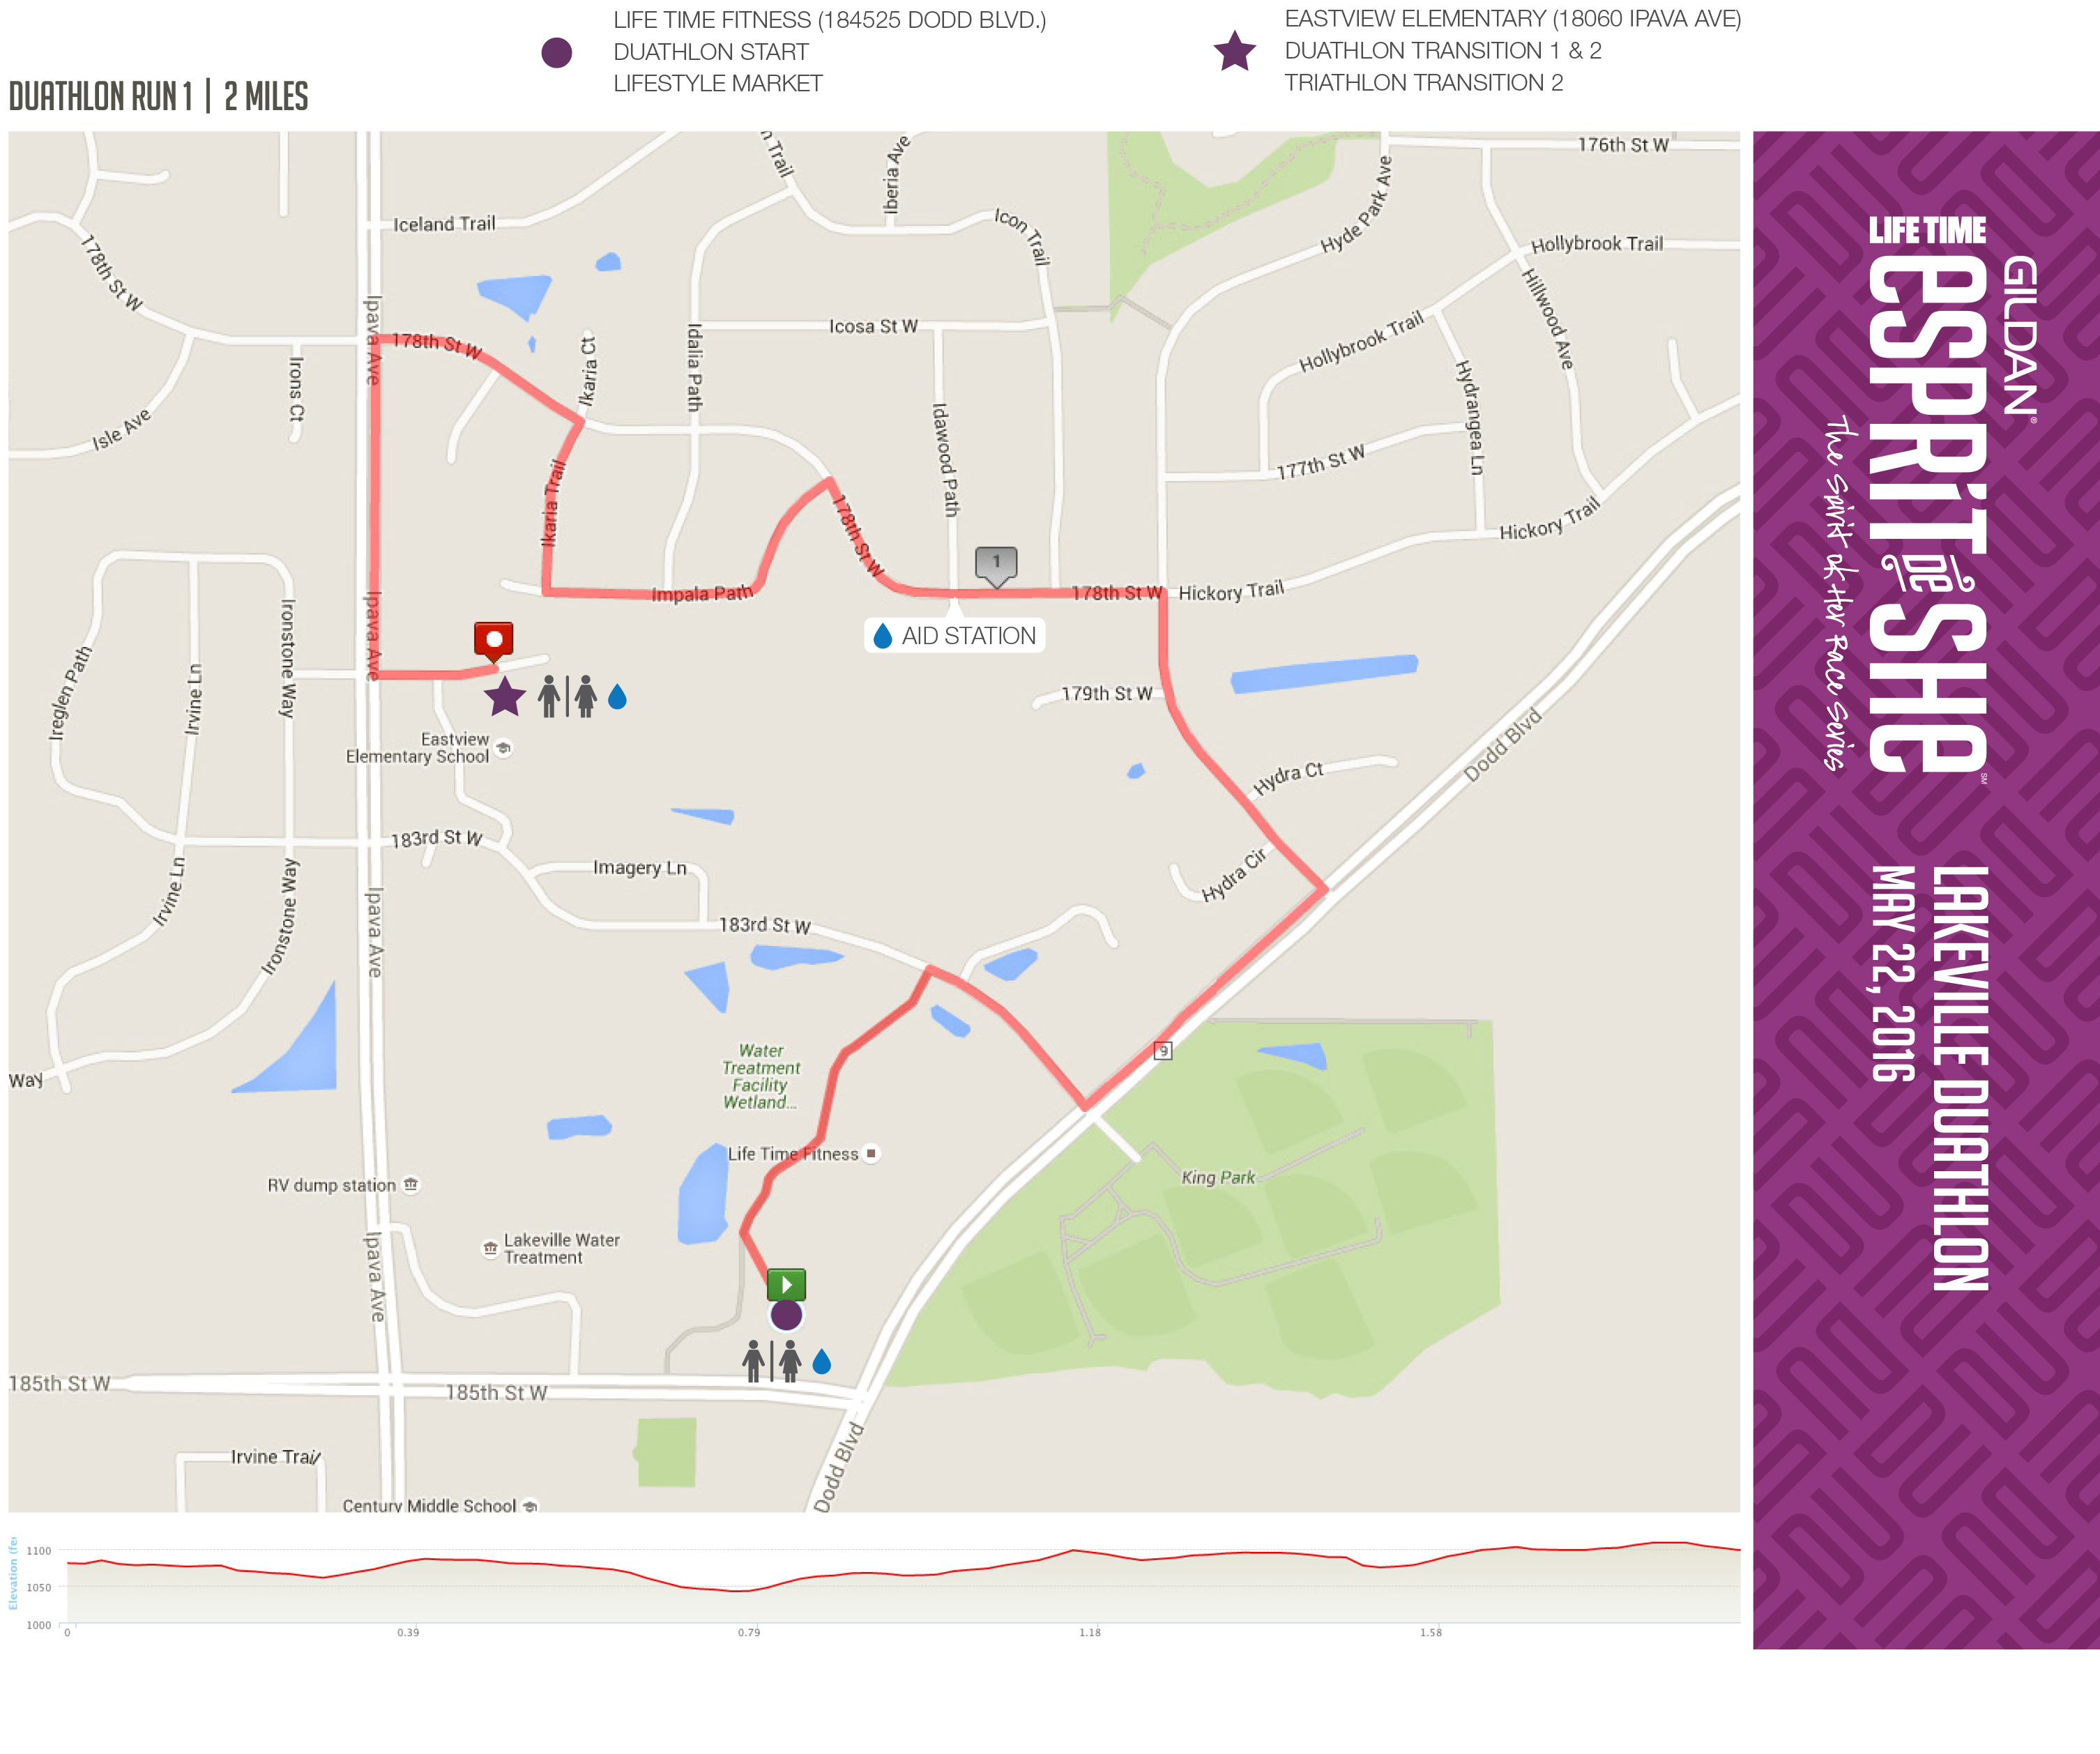 2016-GEDS-Lakeville-Du-Run-1-Course-Map